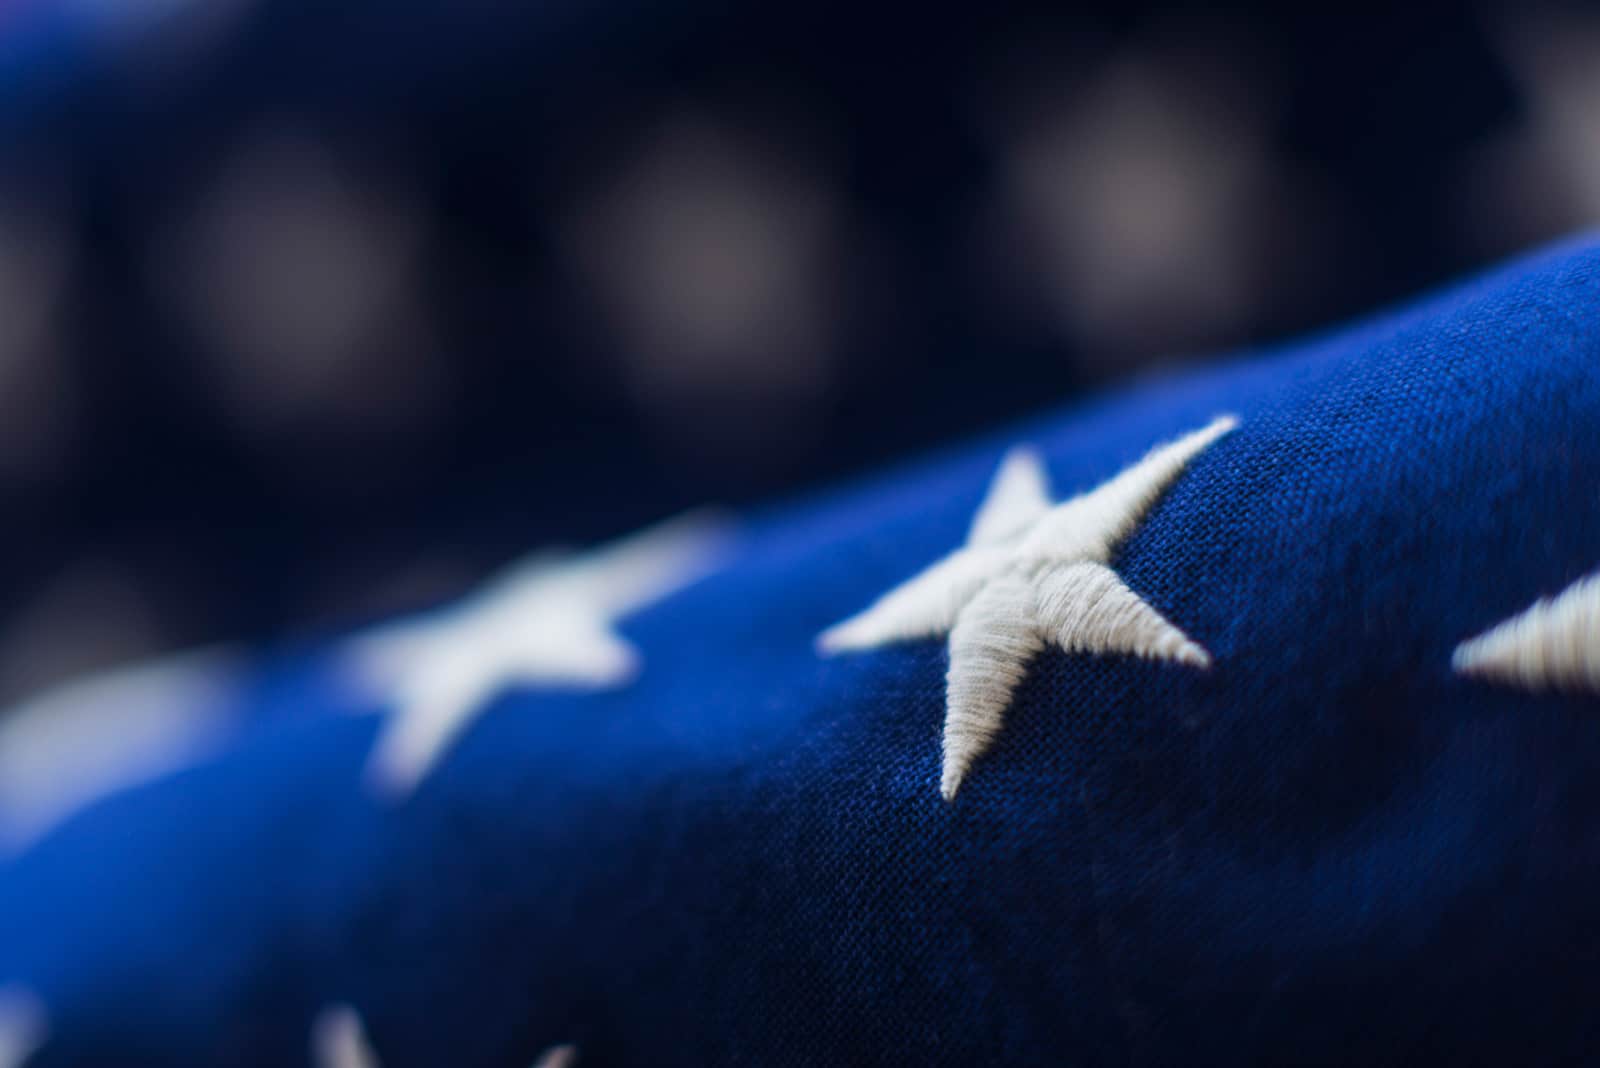 stars embroidered on US flag